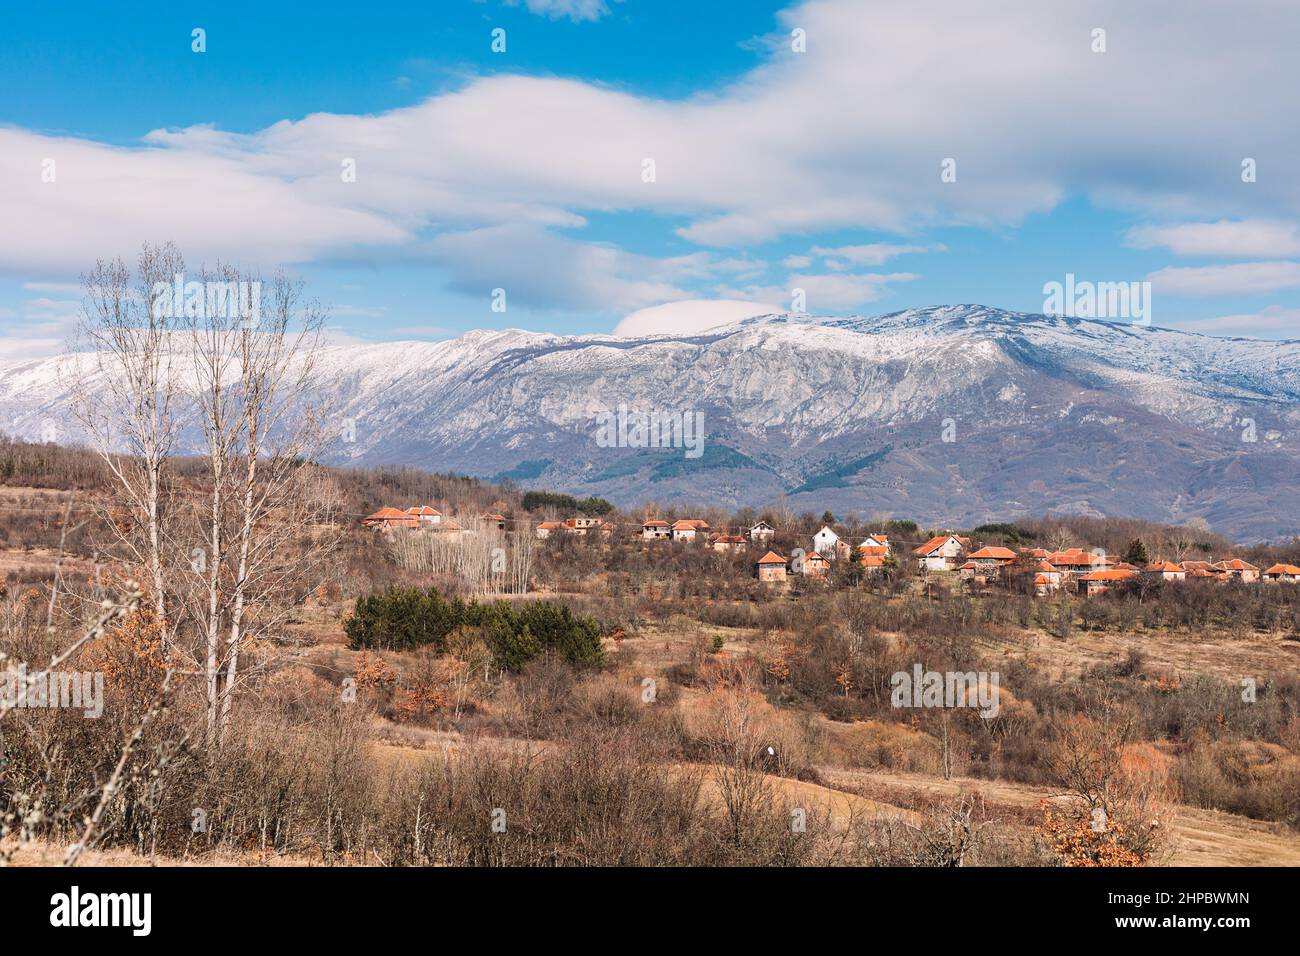 Landschaft des trockenen Berges in Ostserbien mit Dorfhäusern im Tal Stockfoto